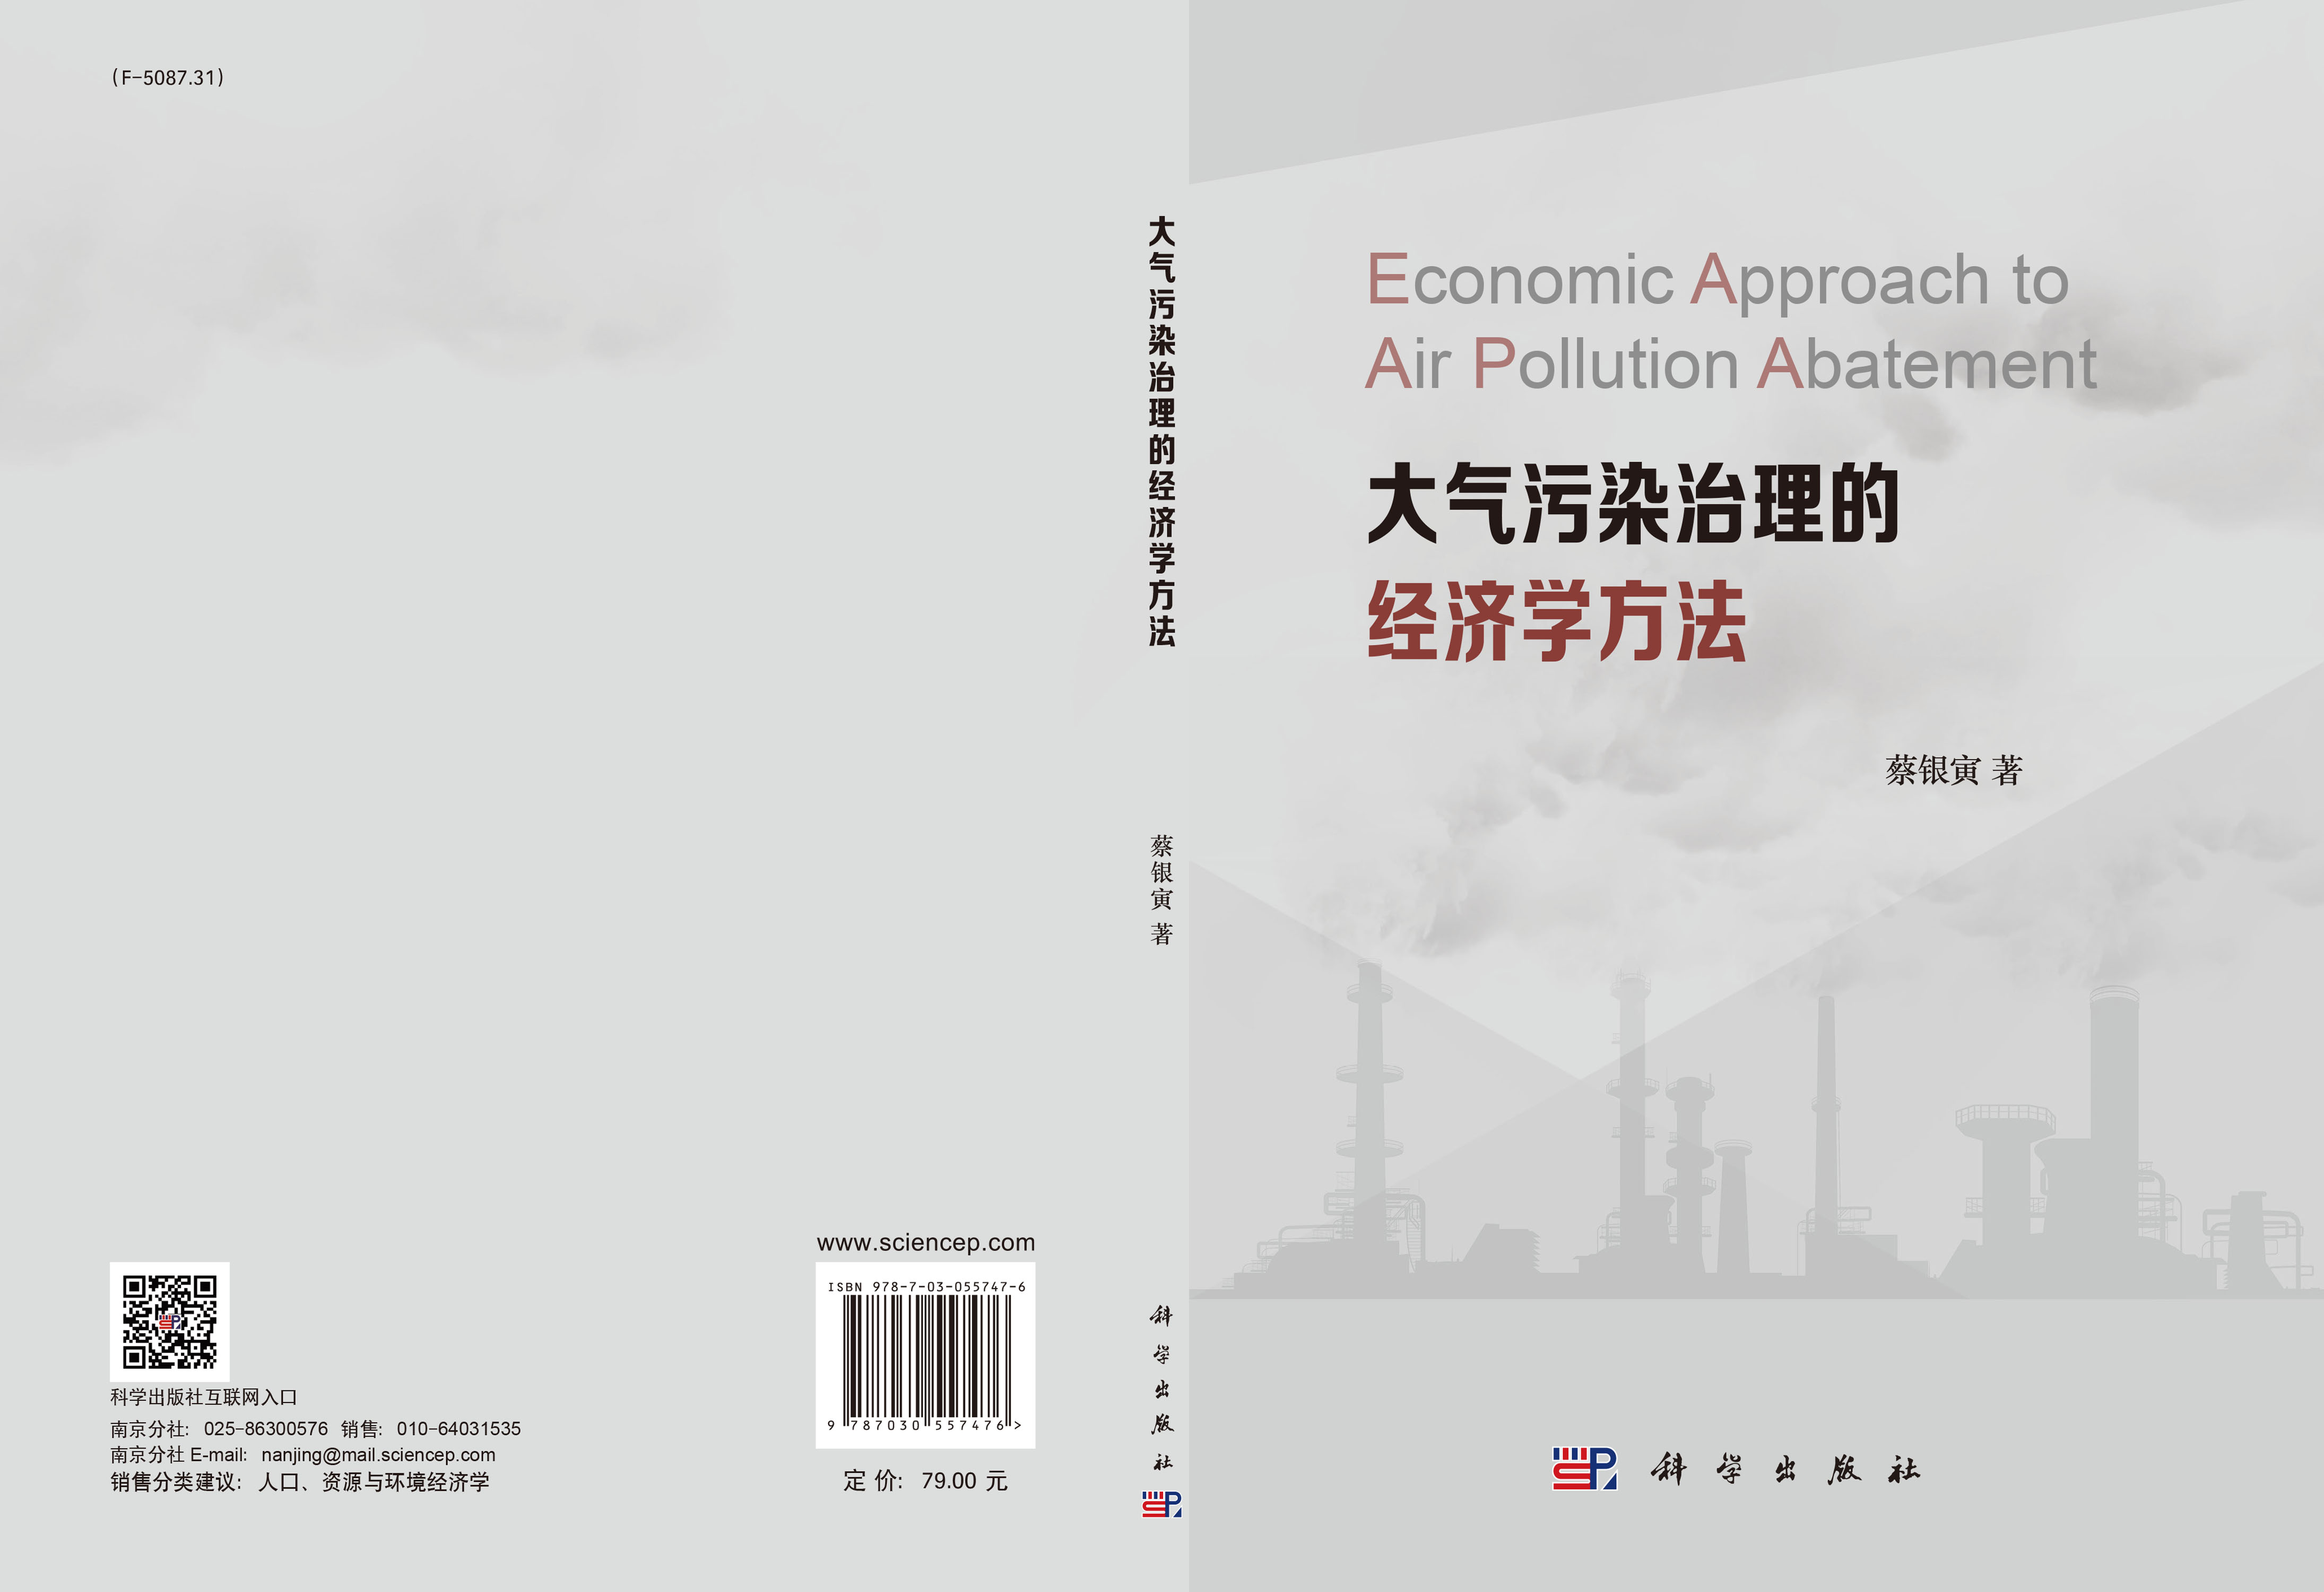 大气污染治理的经济学方法